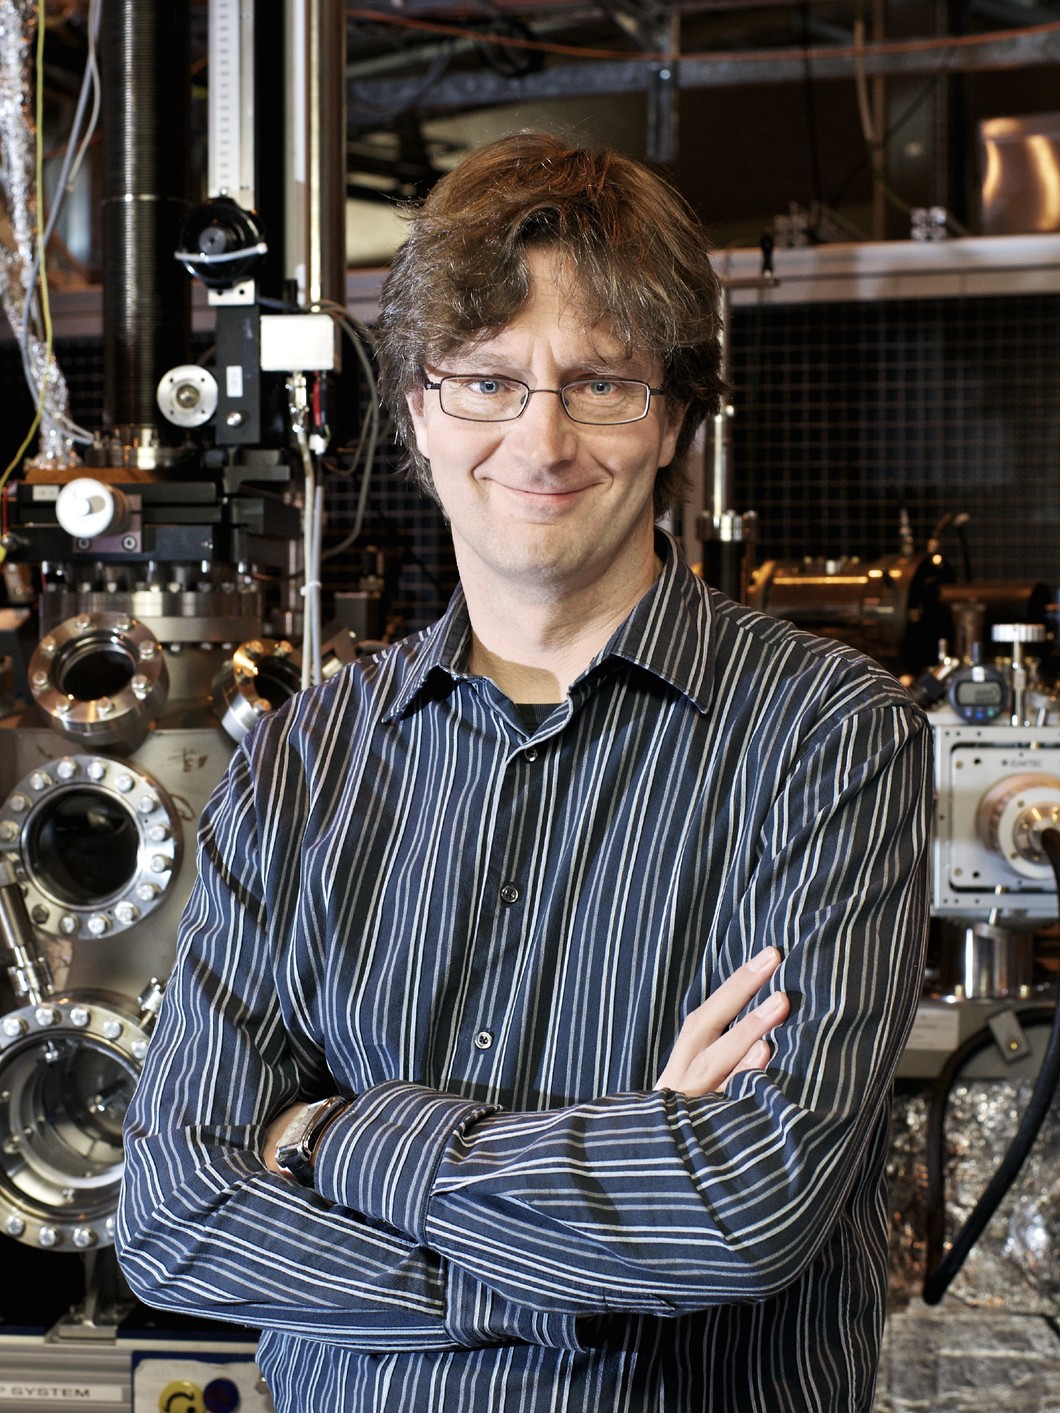 Frithjof Nolting leitet das Labor für Synchrotron-Strahlung – Physik der kondensierten Materie am PSI. Sein Spezialgebiet ist der Nanomagnetismus. (Foto: Paul Scherrer Institut/Markus Fischer)